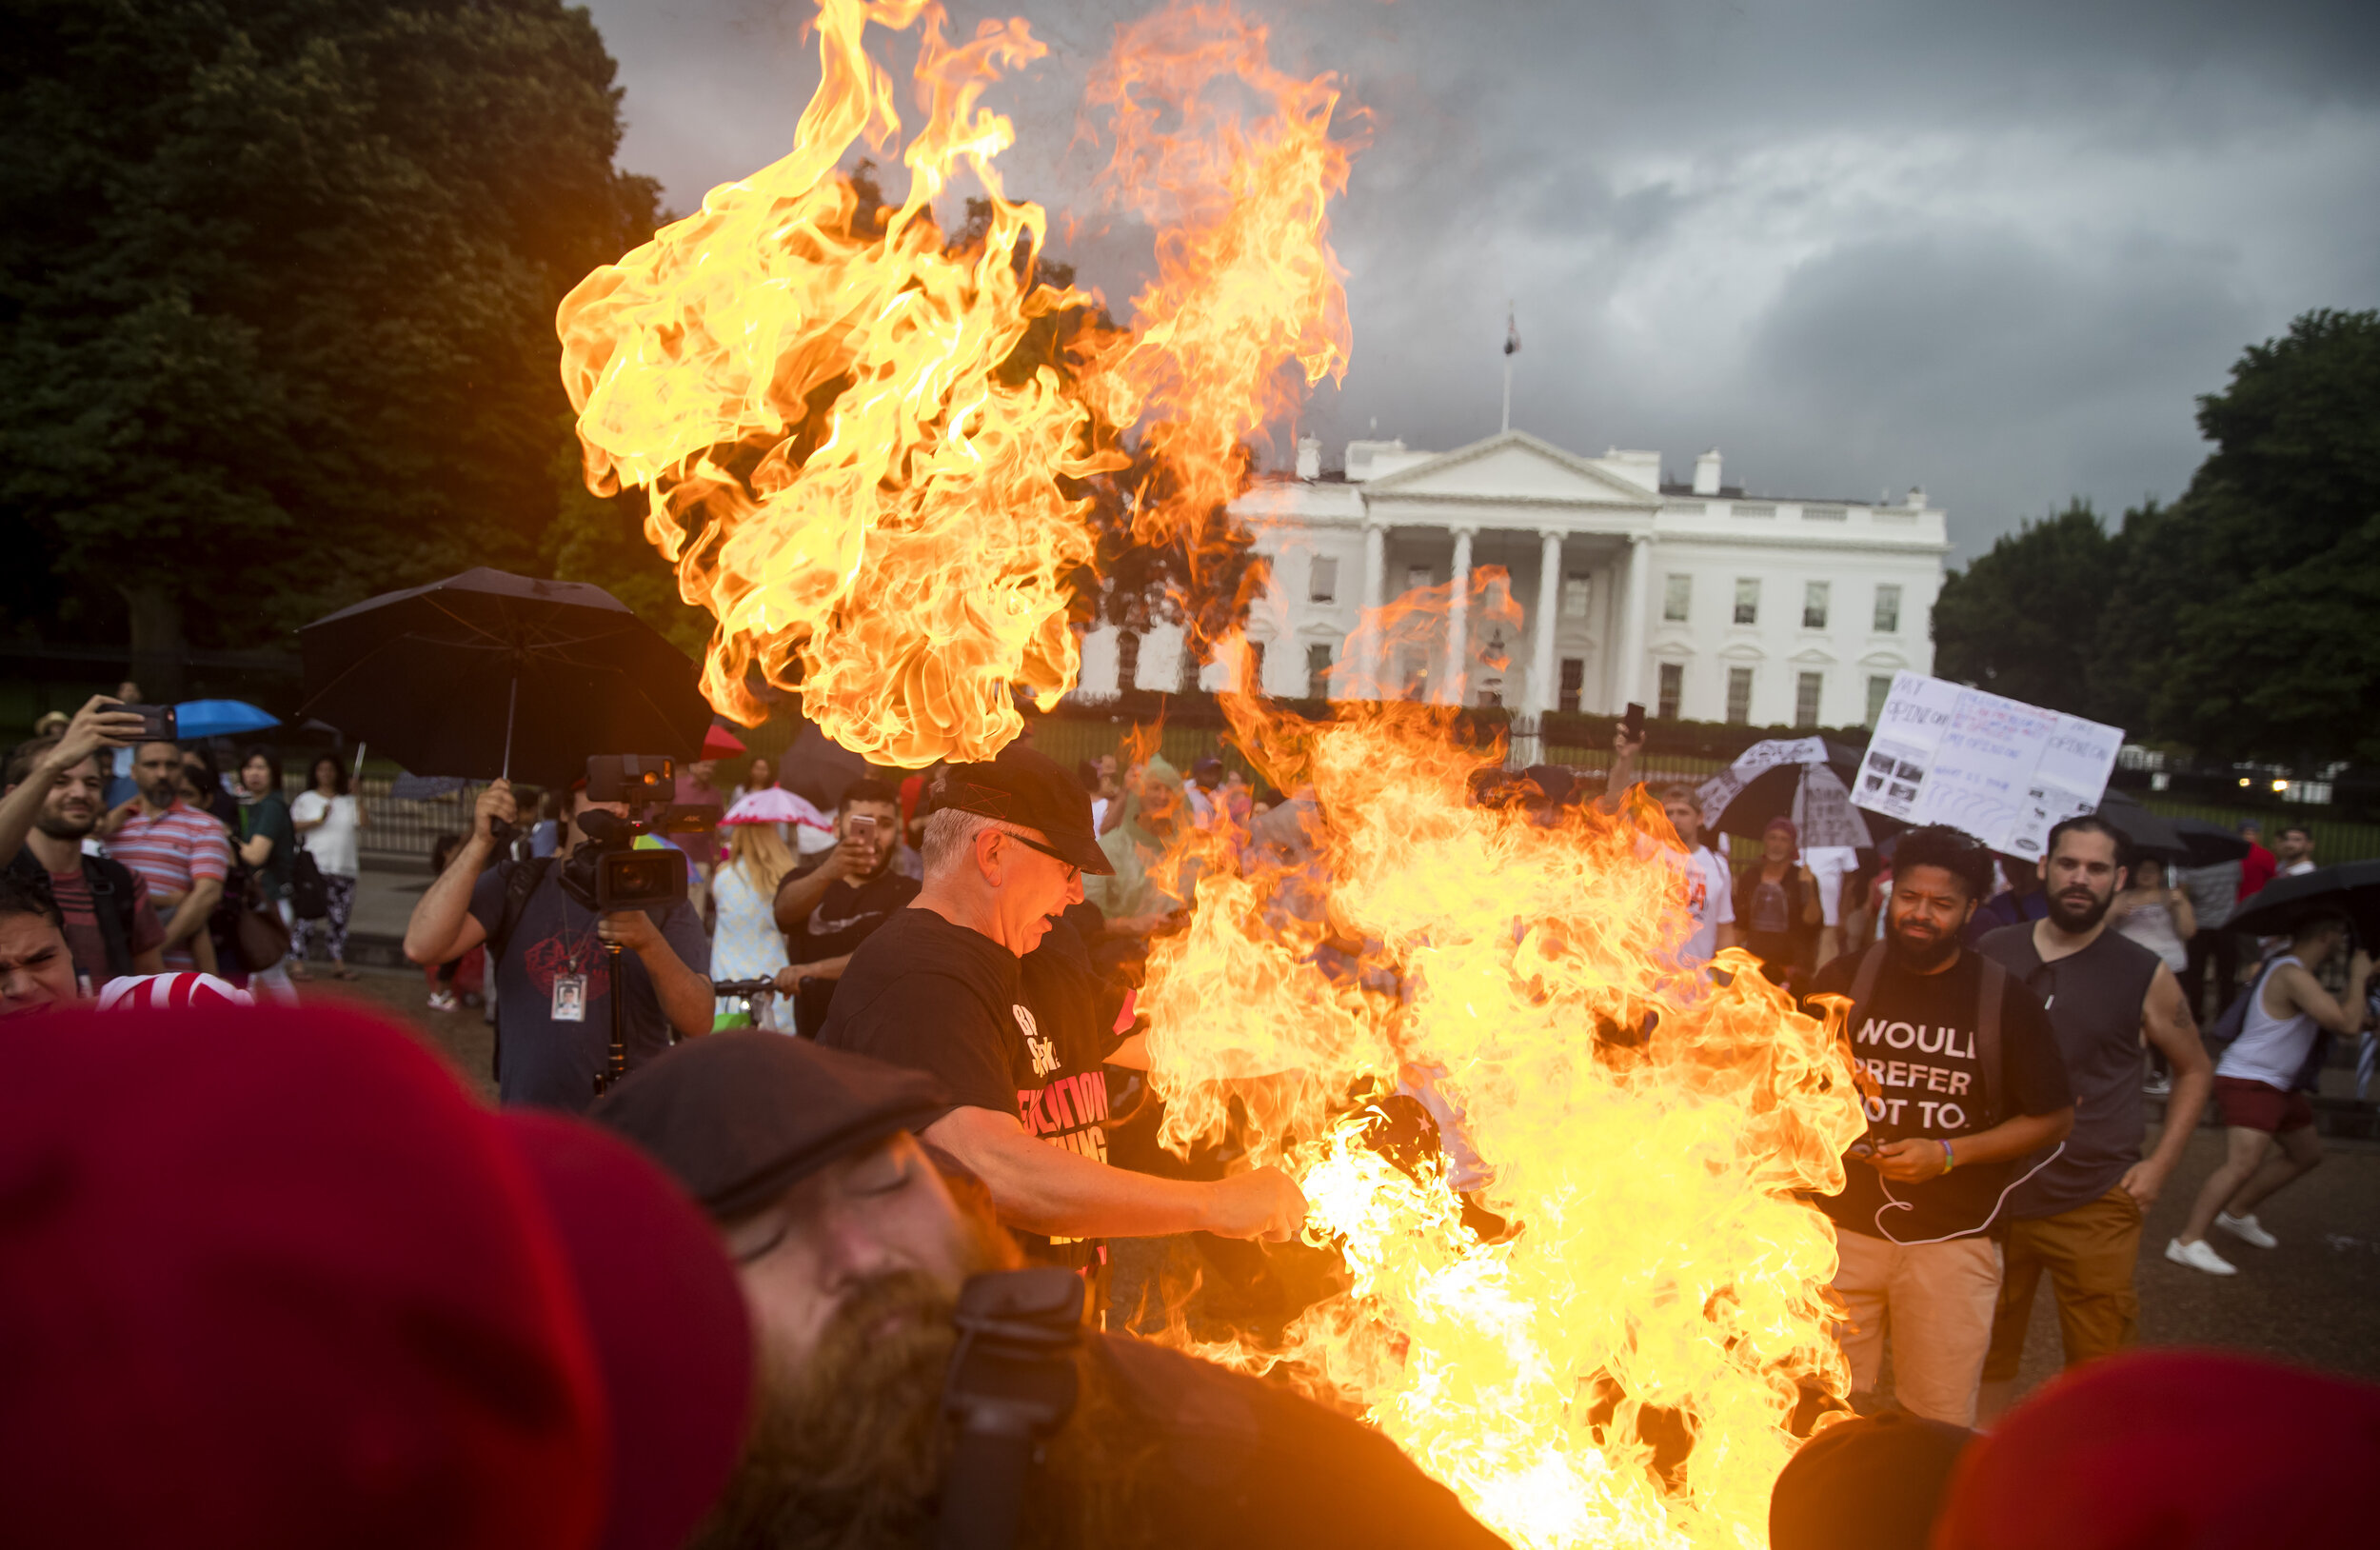   Flag burning on the 4th of July, The White House. Washington DC. 2019  